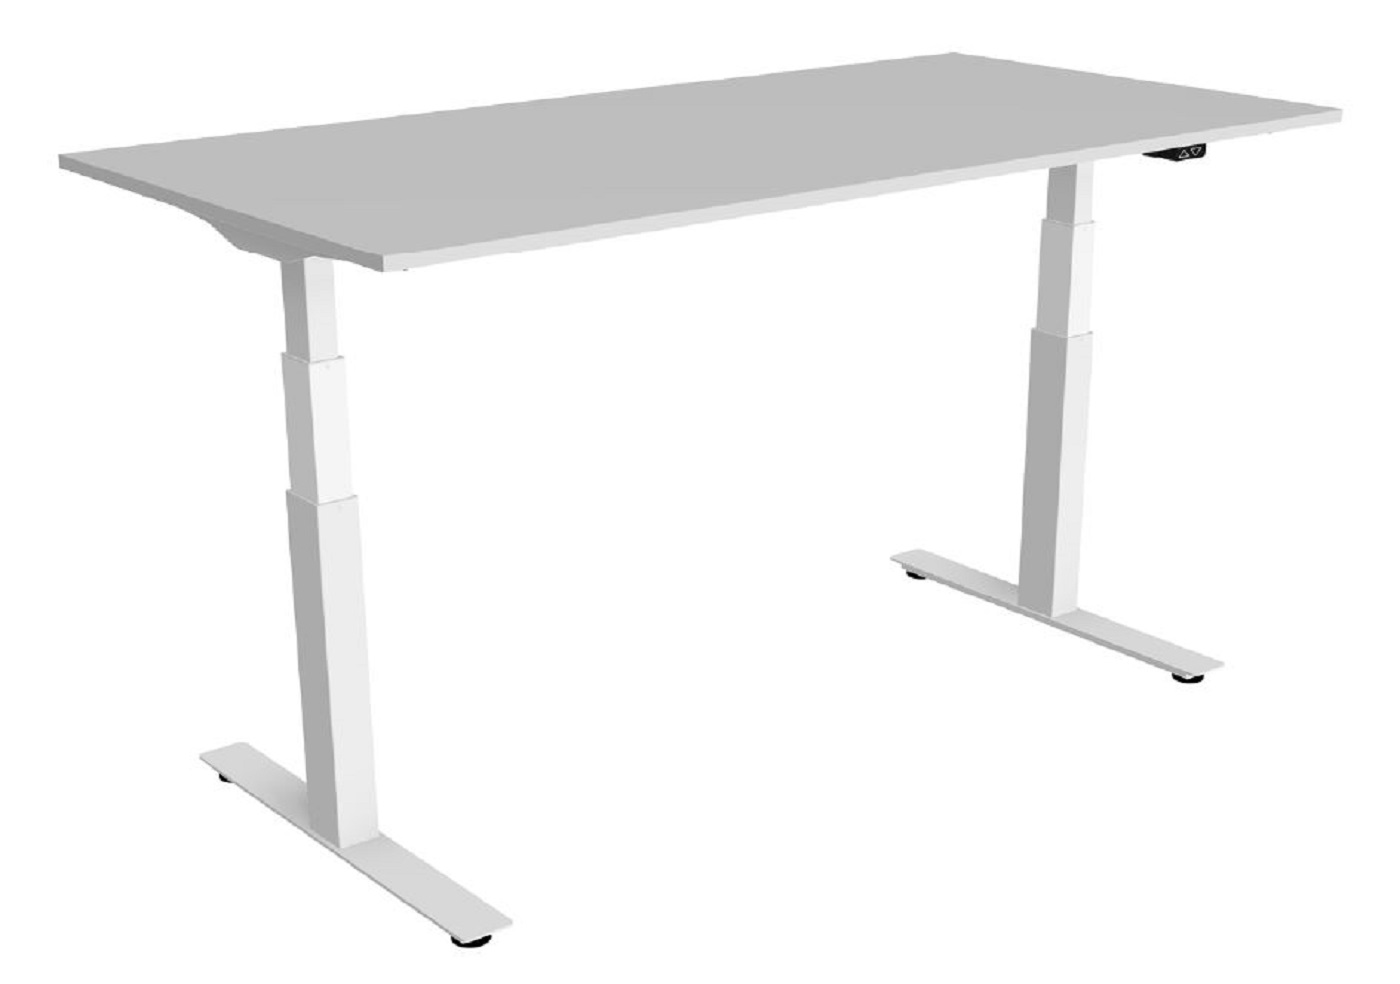 Montážní návod na sestavení stolu DeskTherapy iE5+